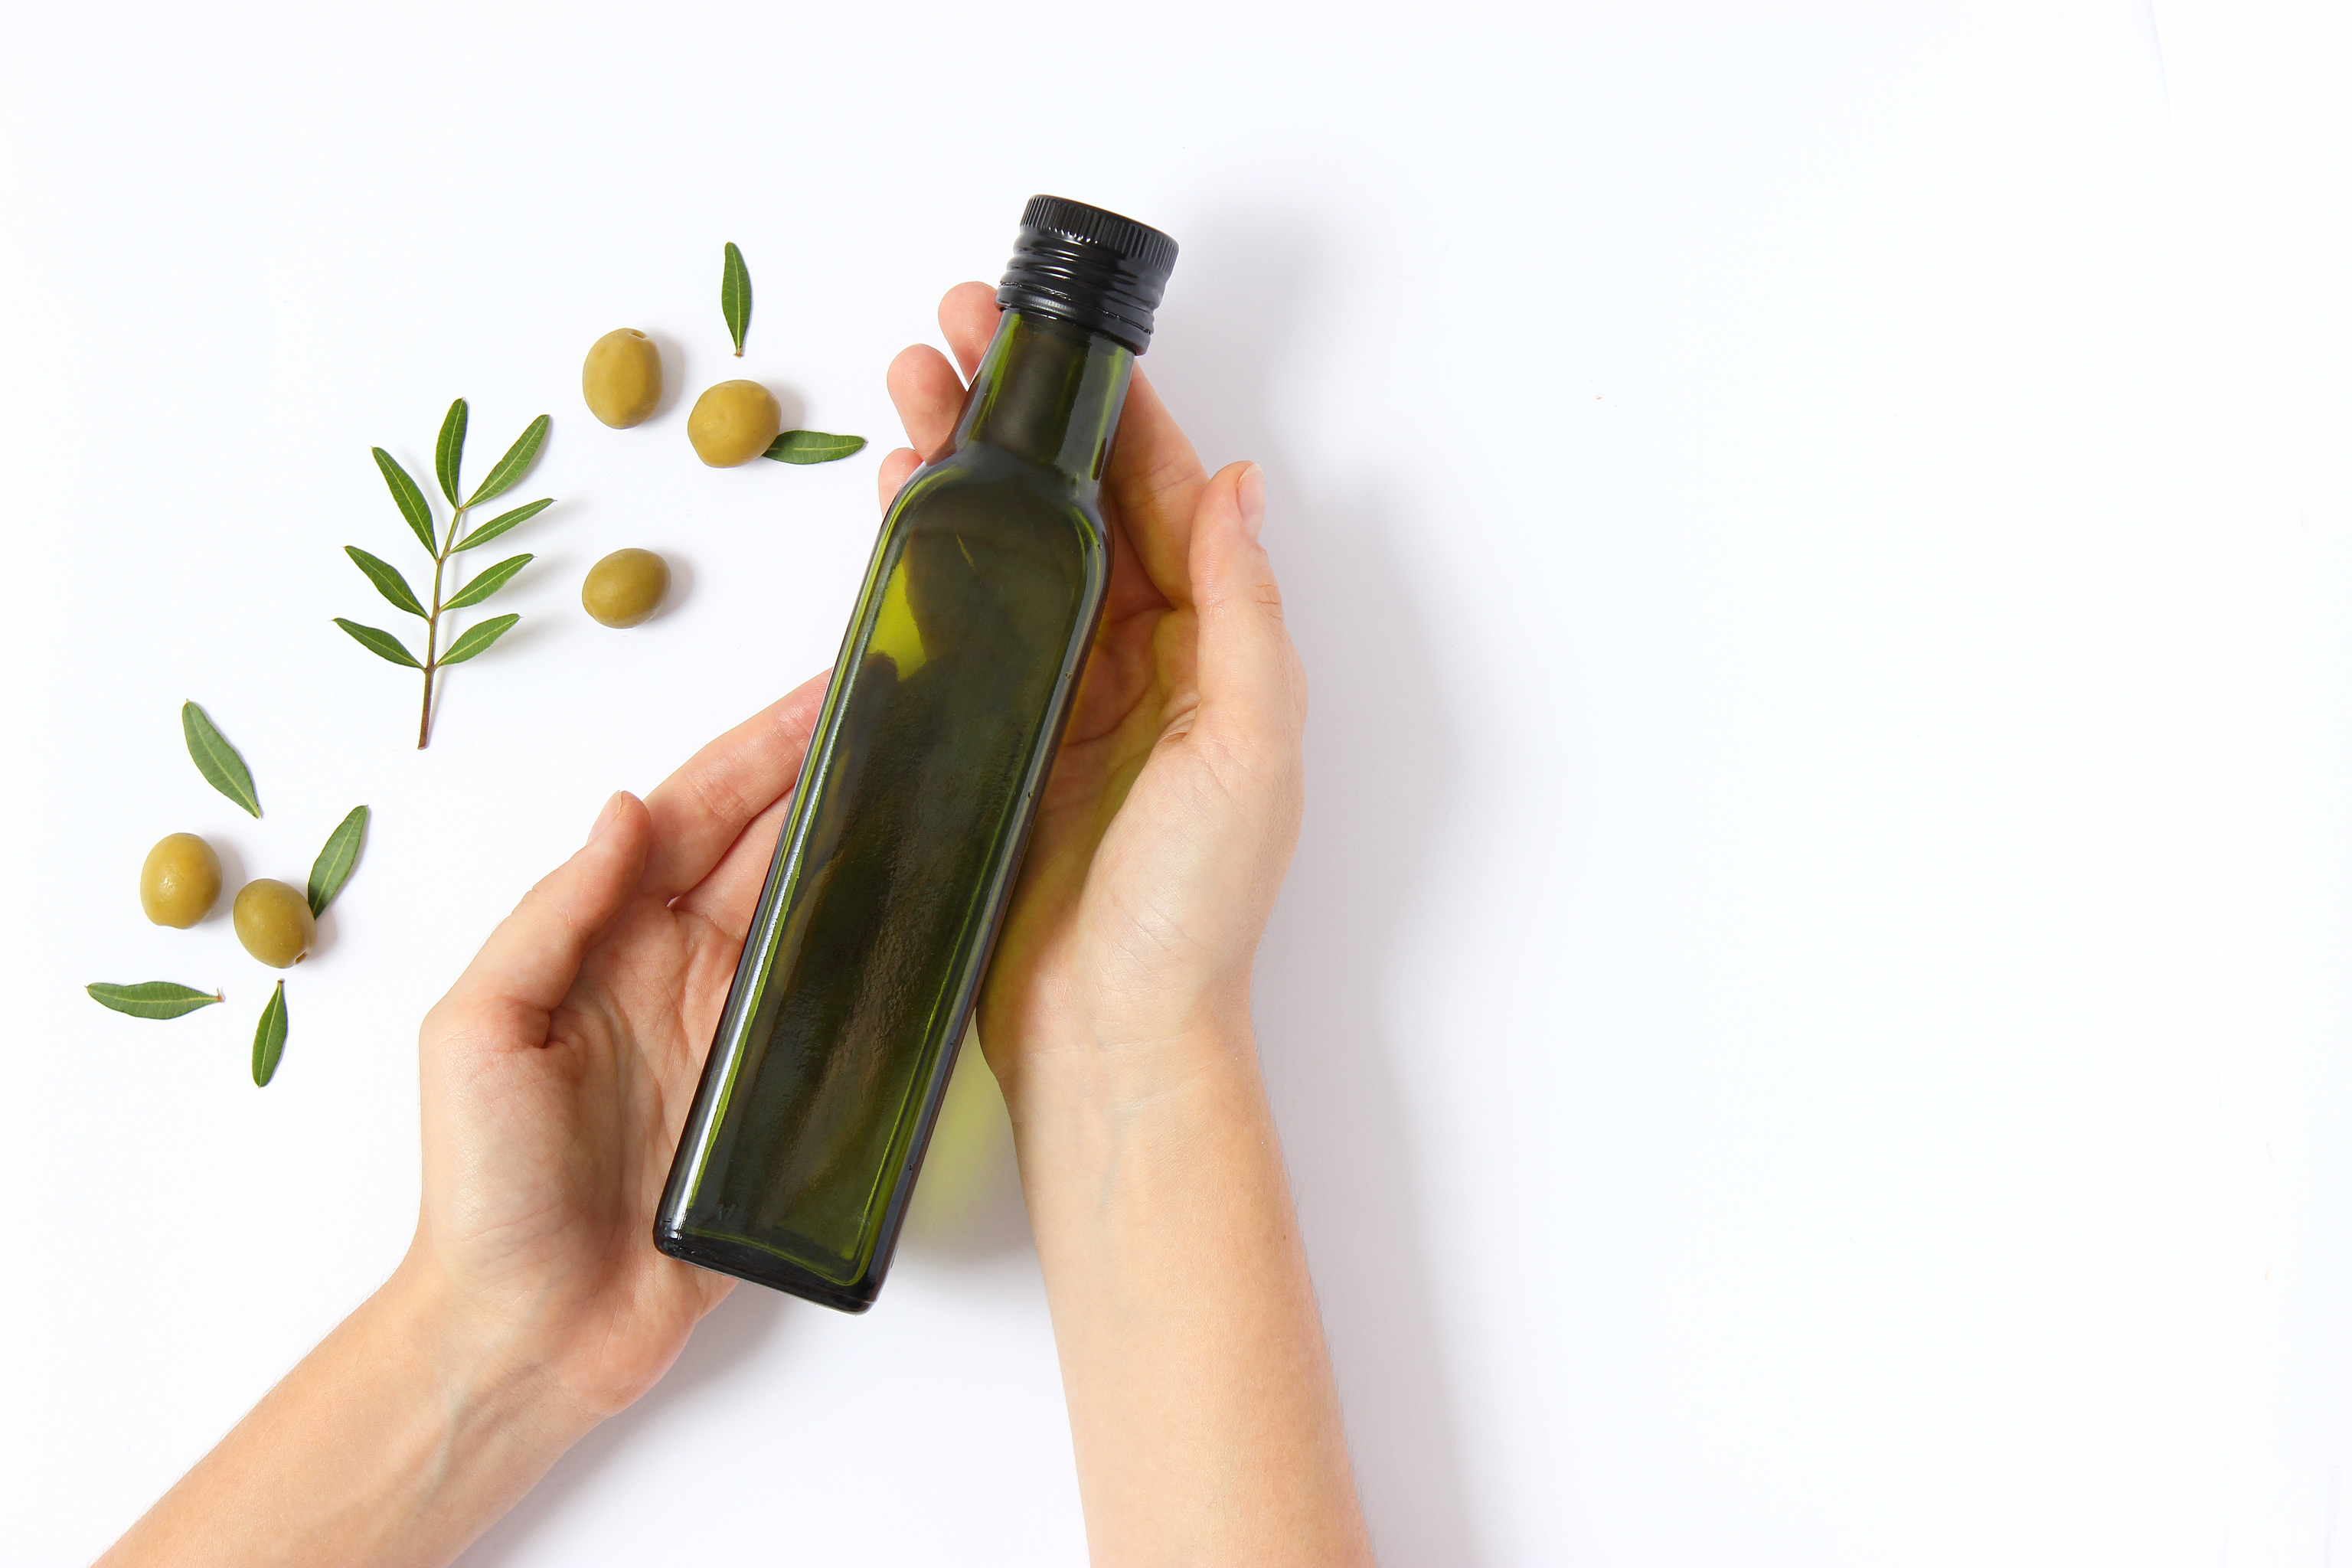 Cómo el aceite de oliva puede beneficiar nuestro cabello